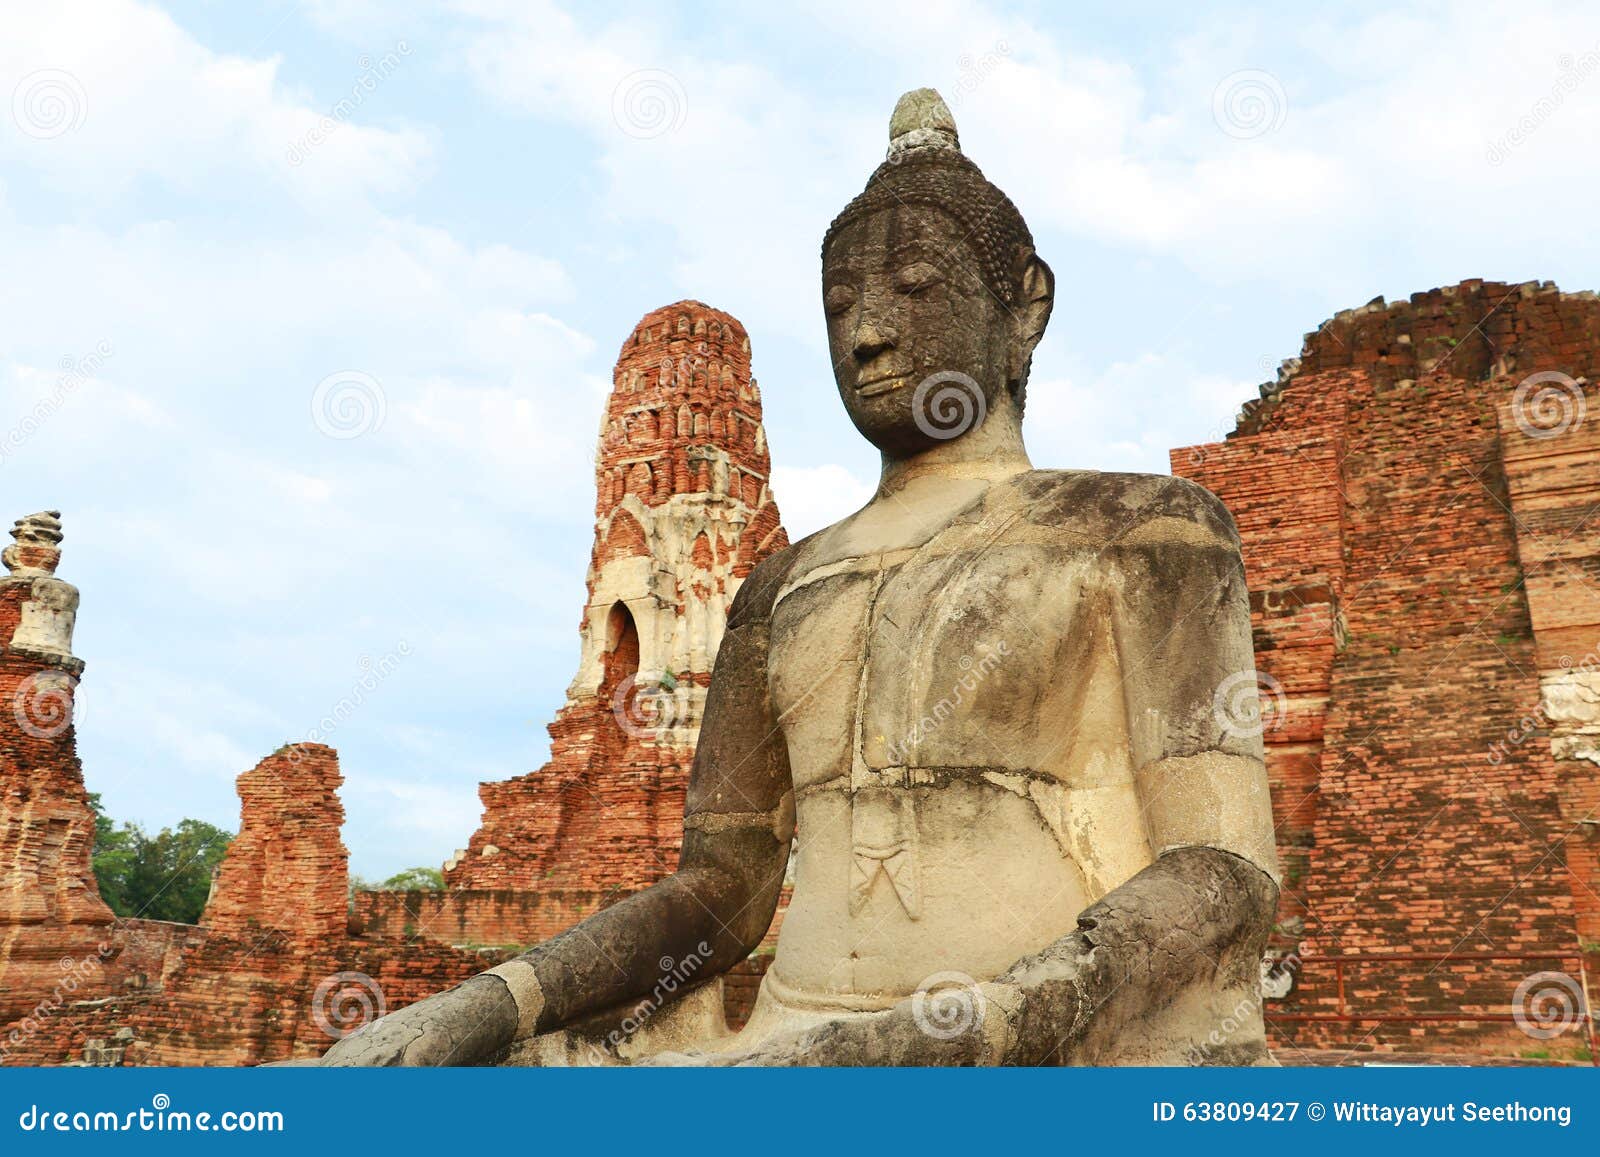 Wat Mahathat (tempio di grande reliquia o tempio di grande reliquario) è il breve nome comune dei parecchi templ buddista importa. Questo tempio antico è stato costruito durante lo XIV secolo, ma è stato ridotto alle rovine nel 1767 quando l'esercito birmano ha invaso Ayutthaya, la capitale del Siam